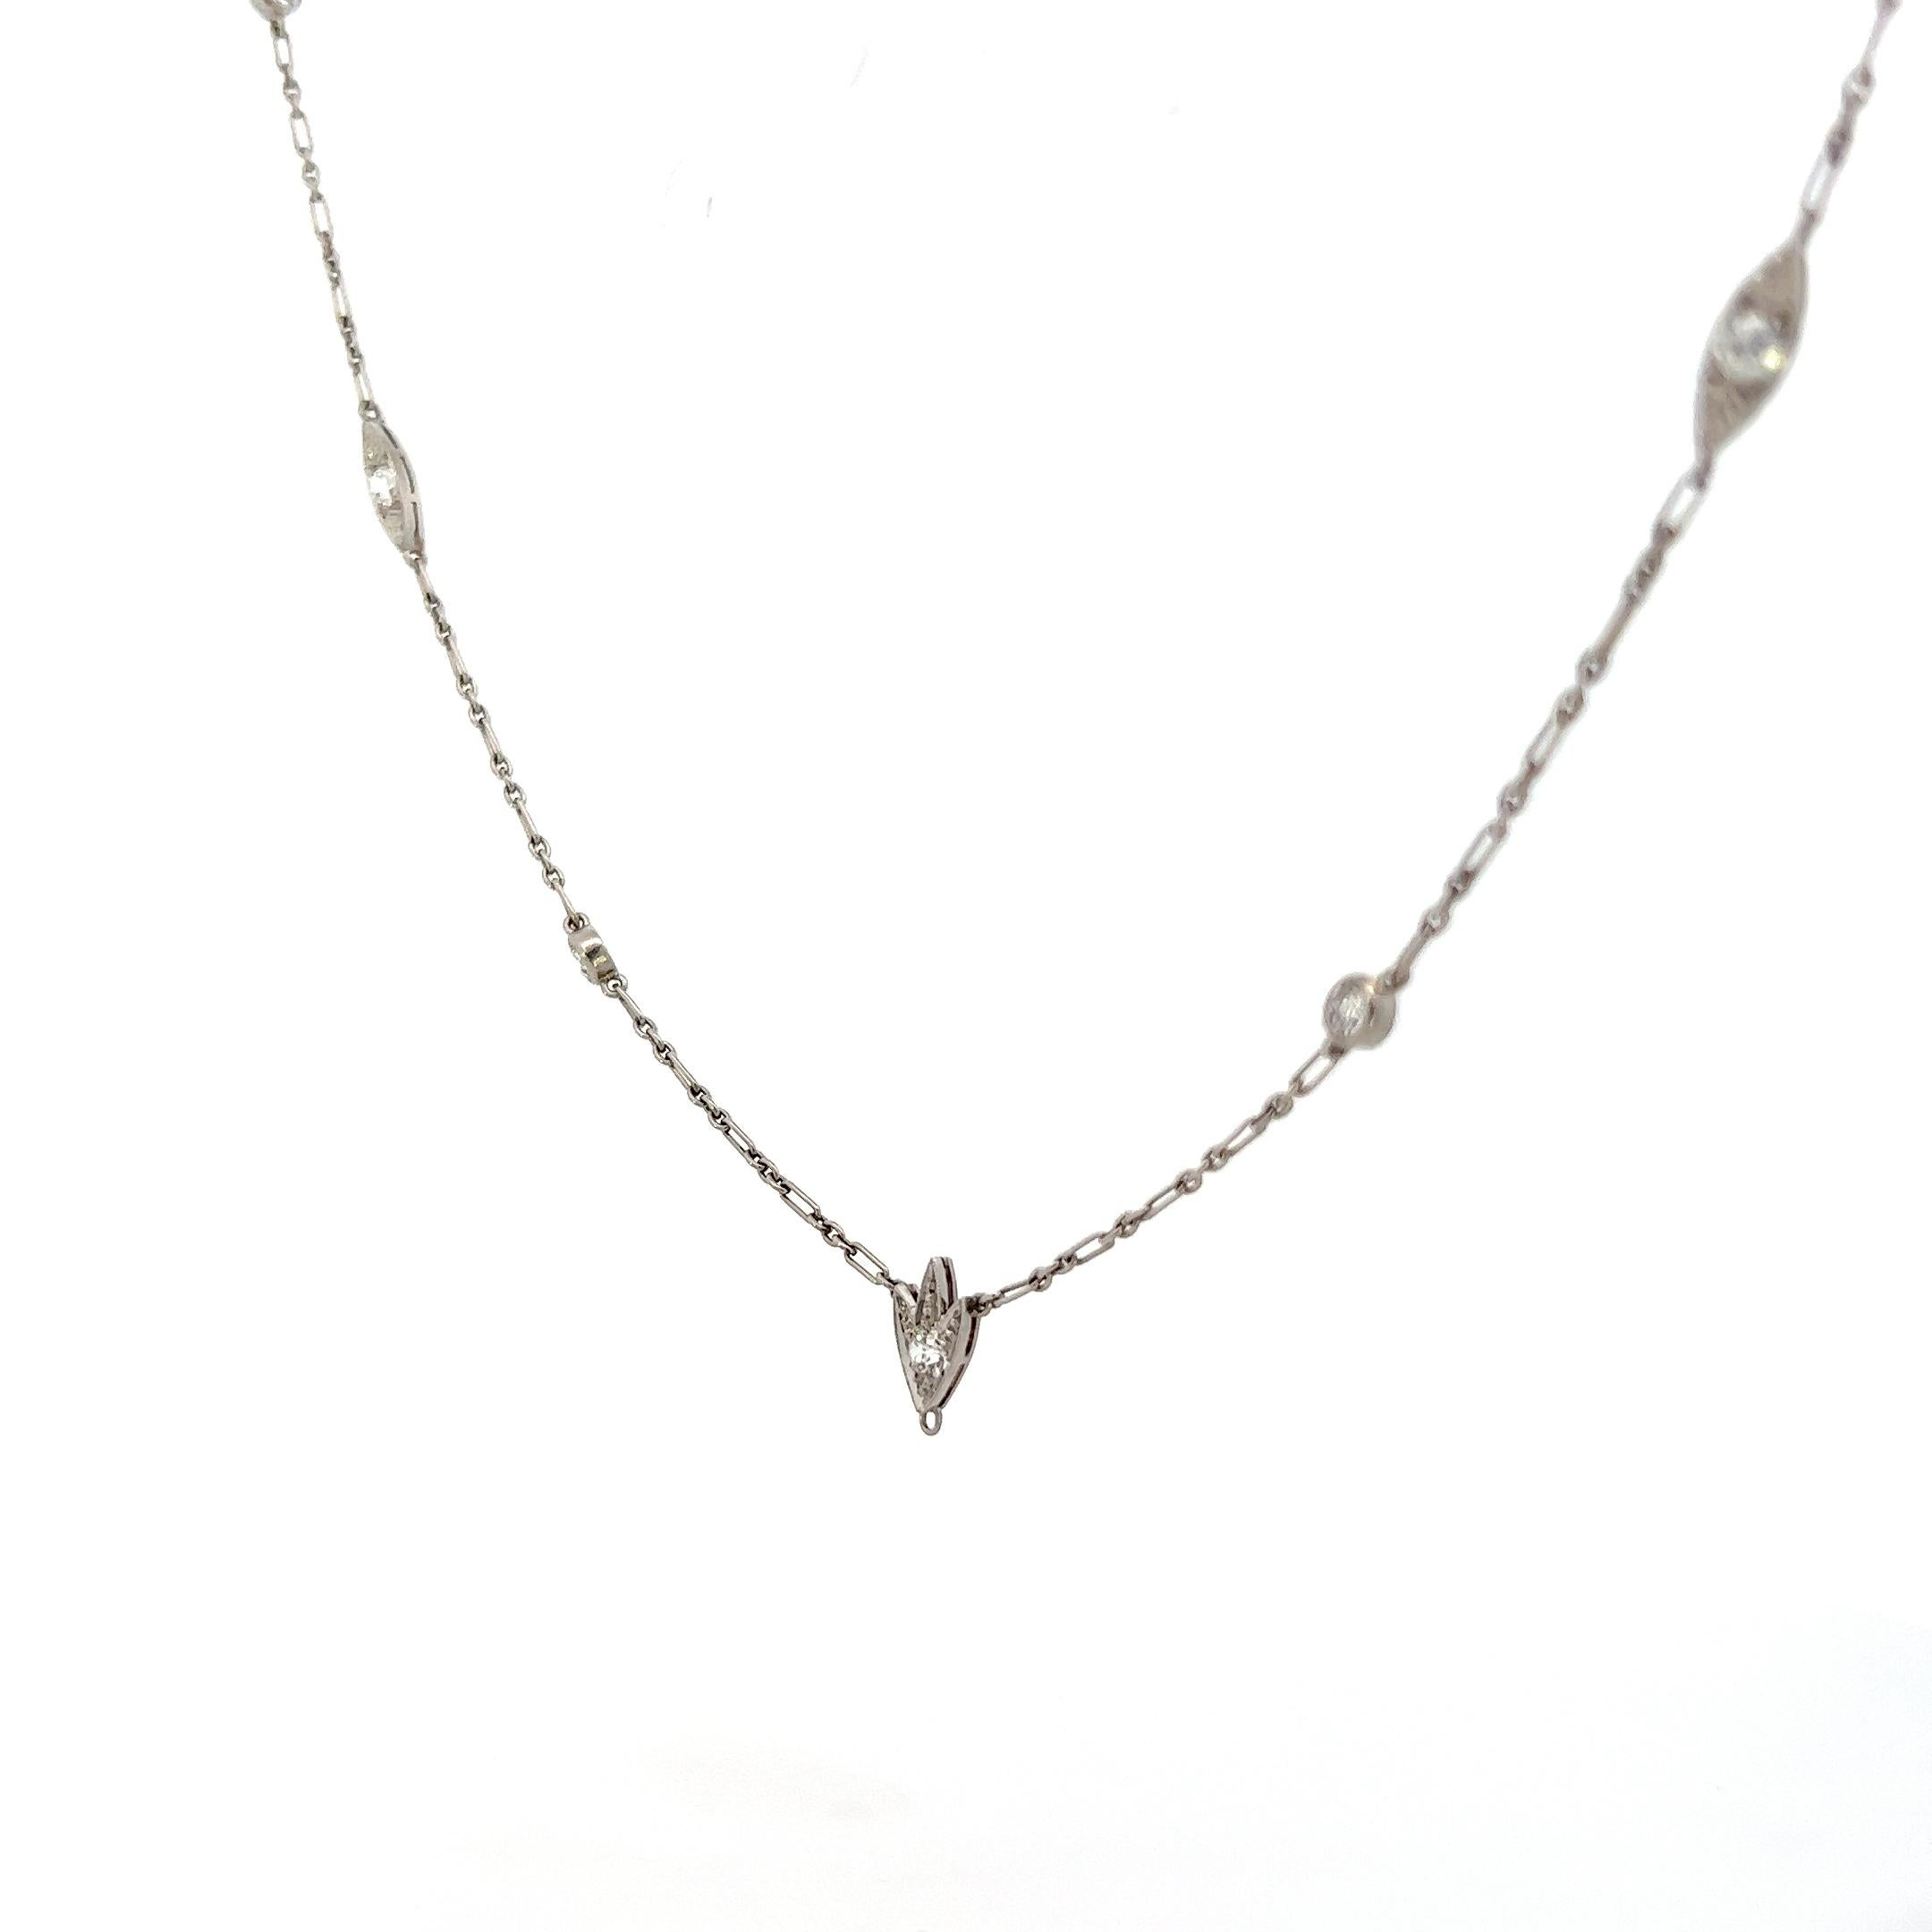 1925 Art Deco 15” Platinum Necklace w/ Euro Cut Diamonds  For Sale 1